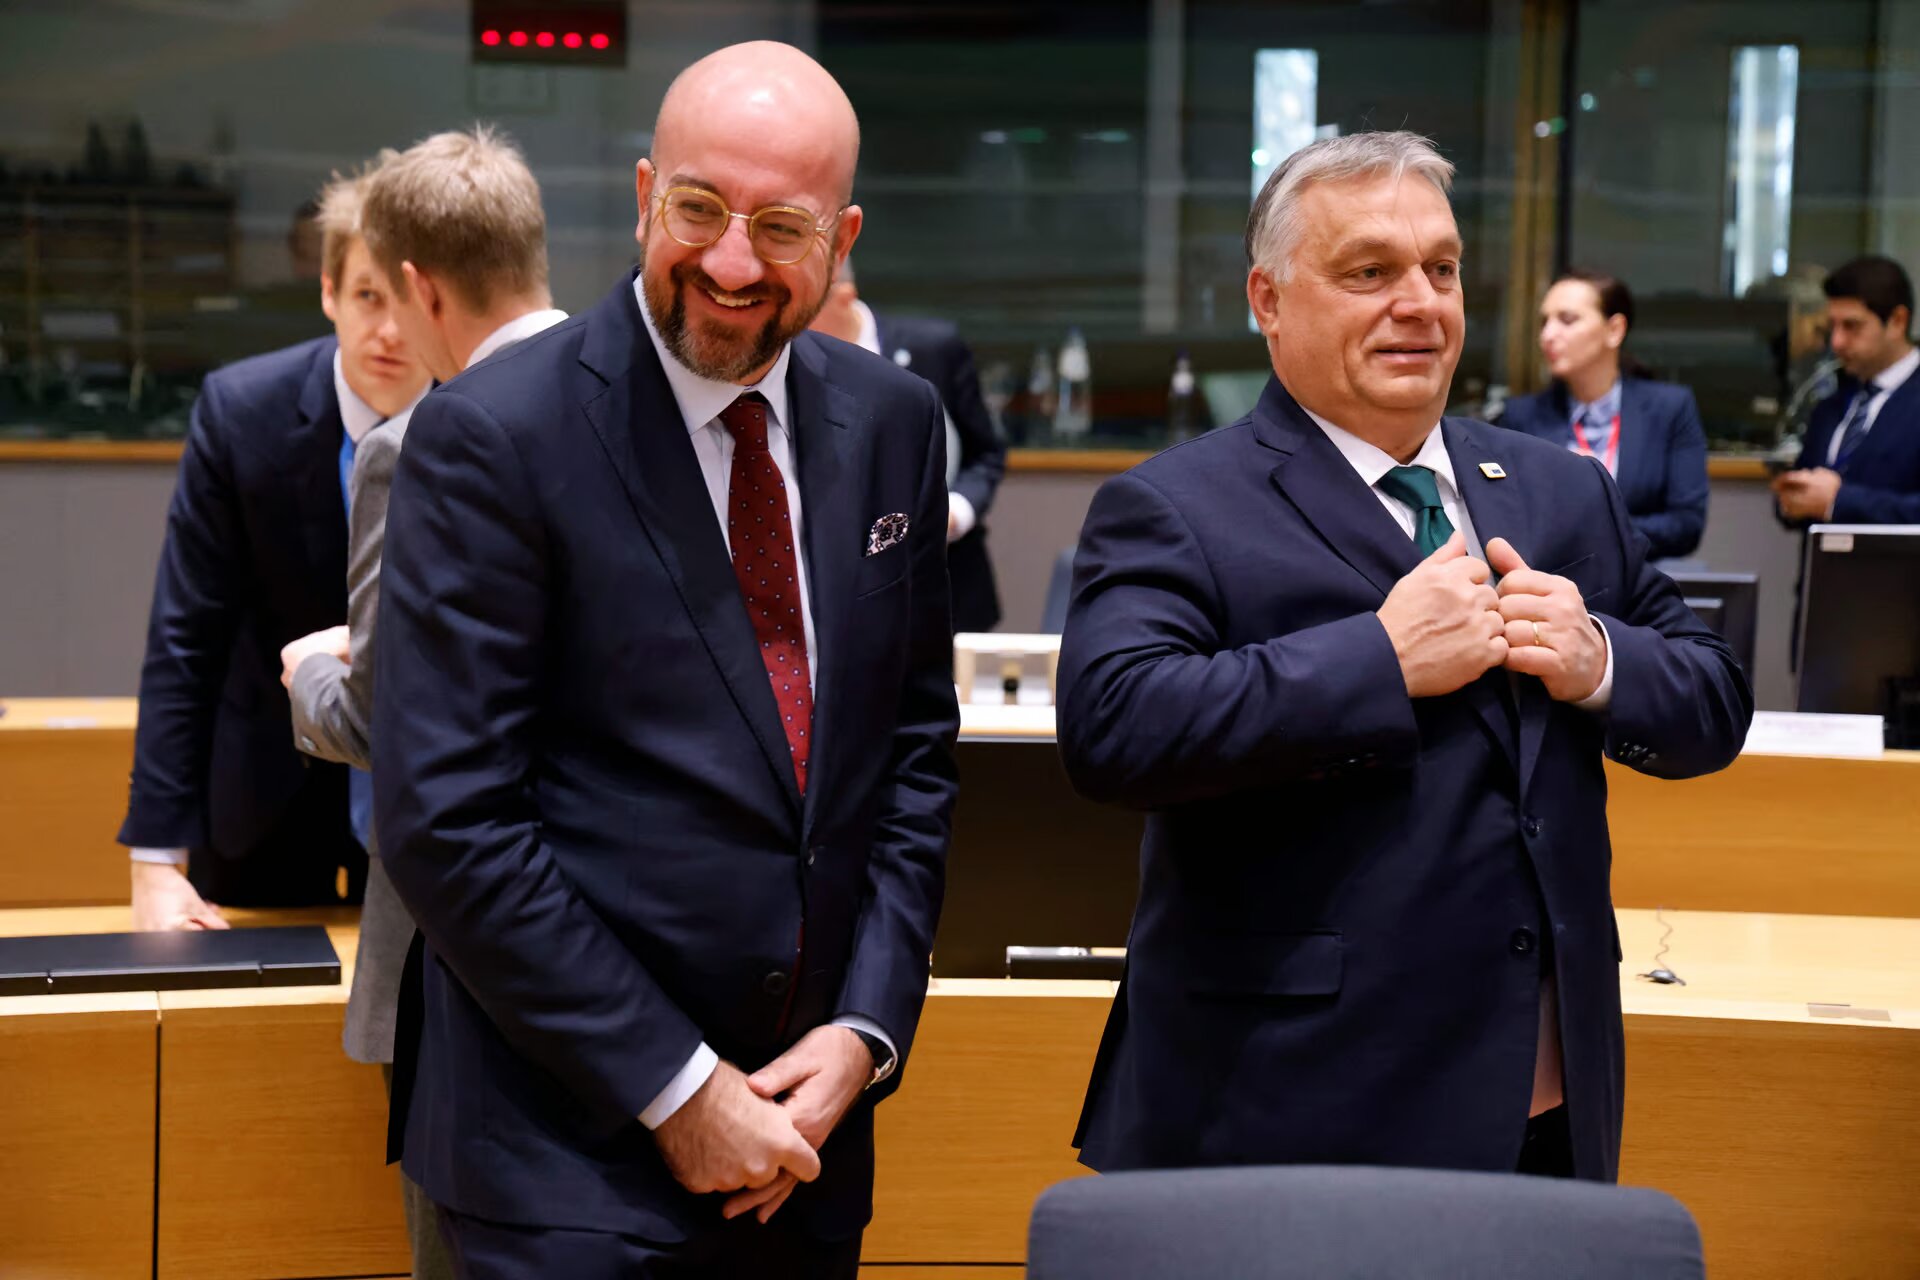 Паника в Брюсселе: бесконтрольный Орбан может возглавить Евросовет после Шарля Мишеля